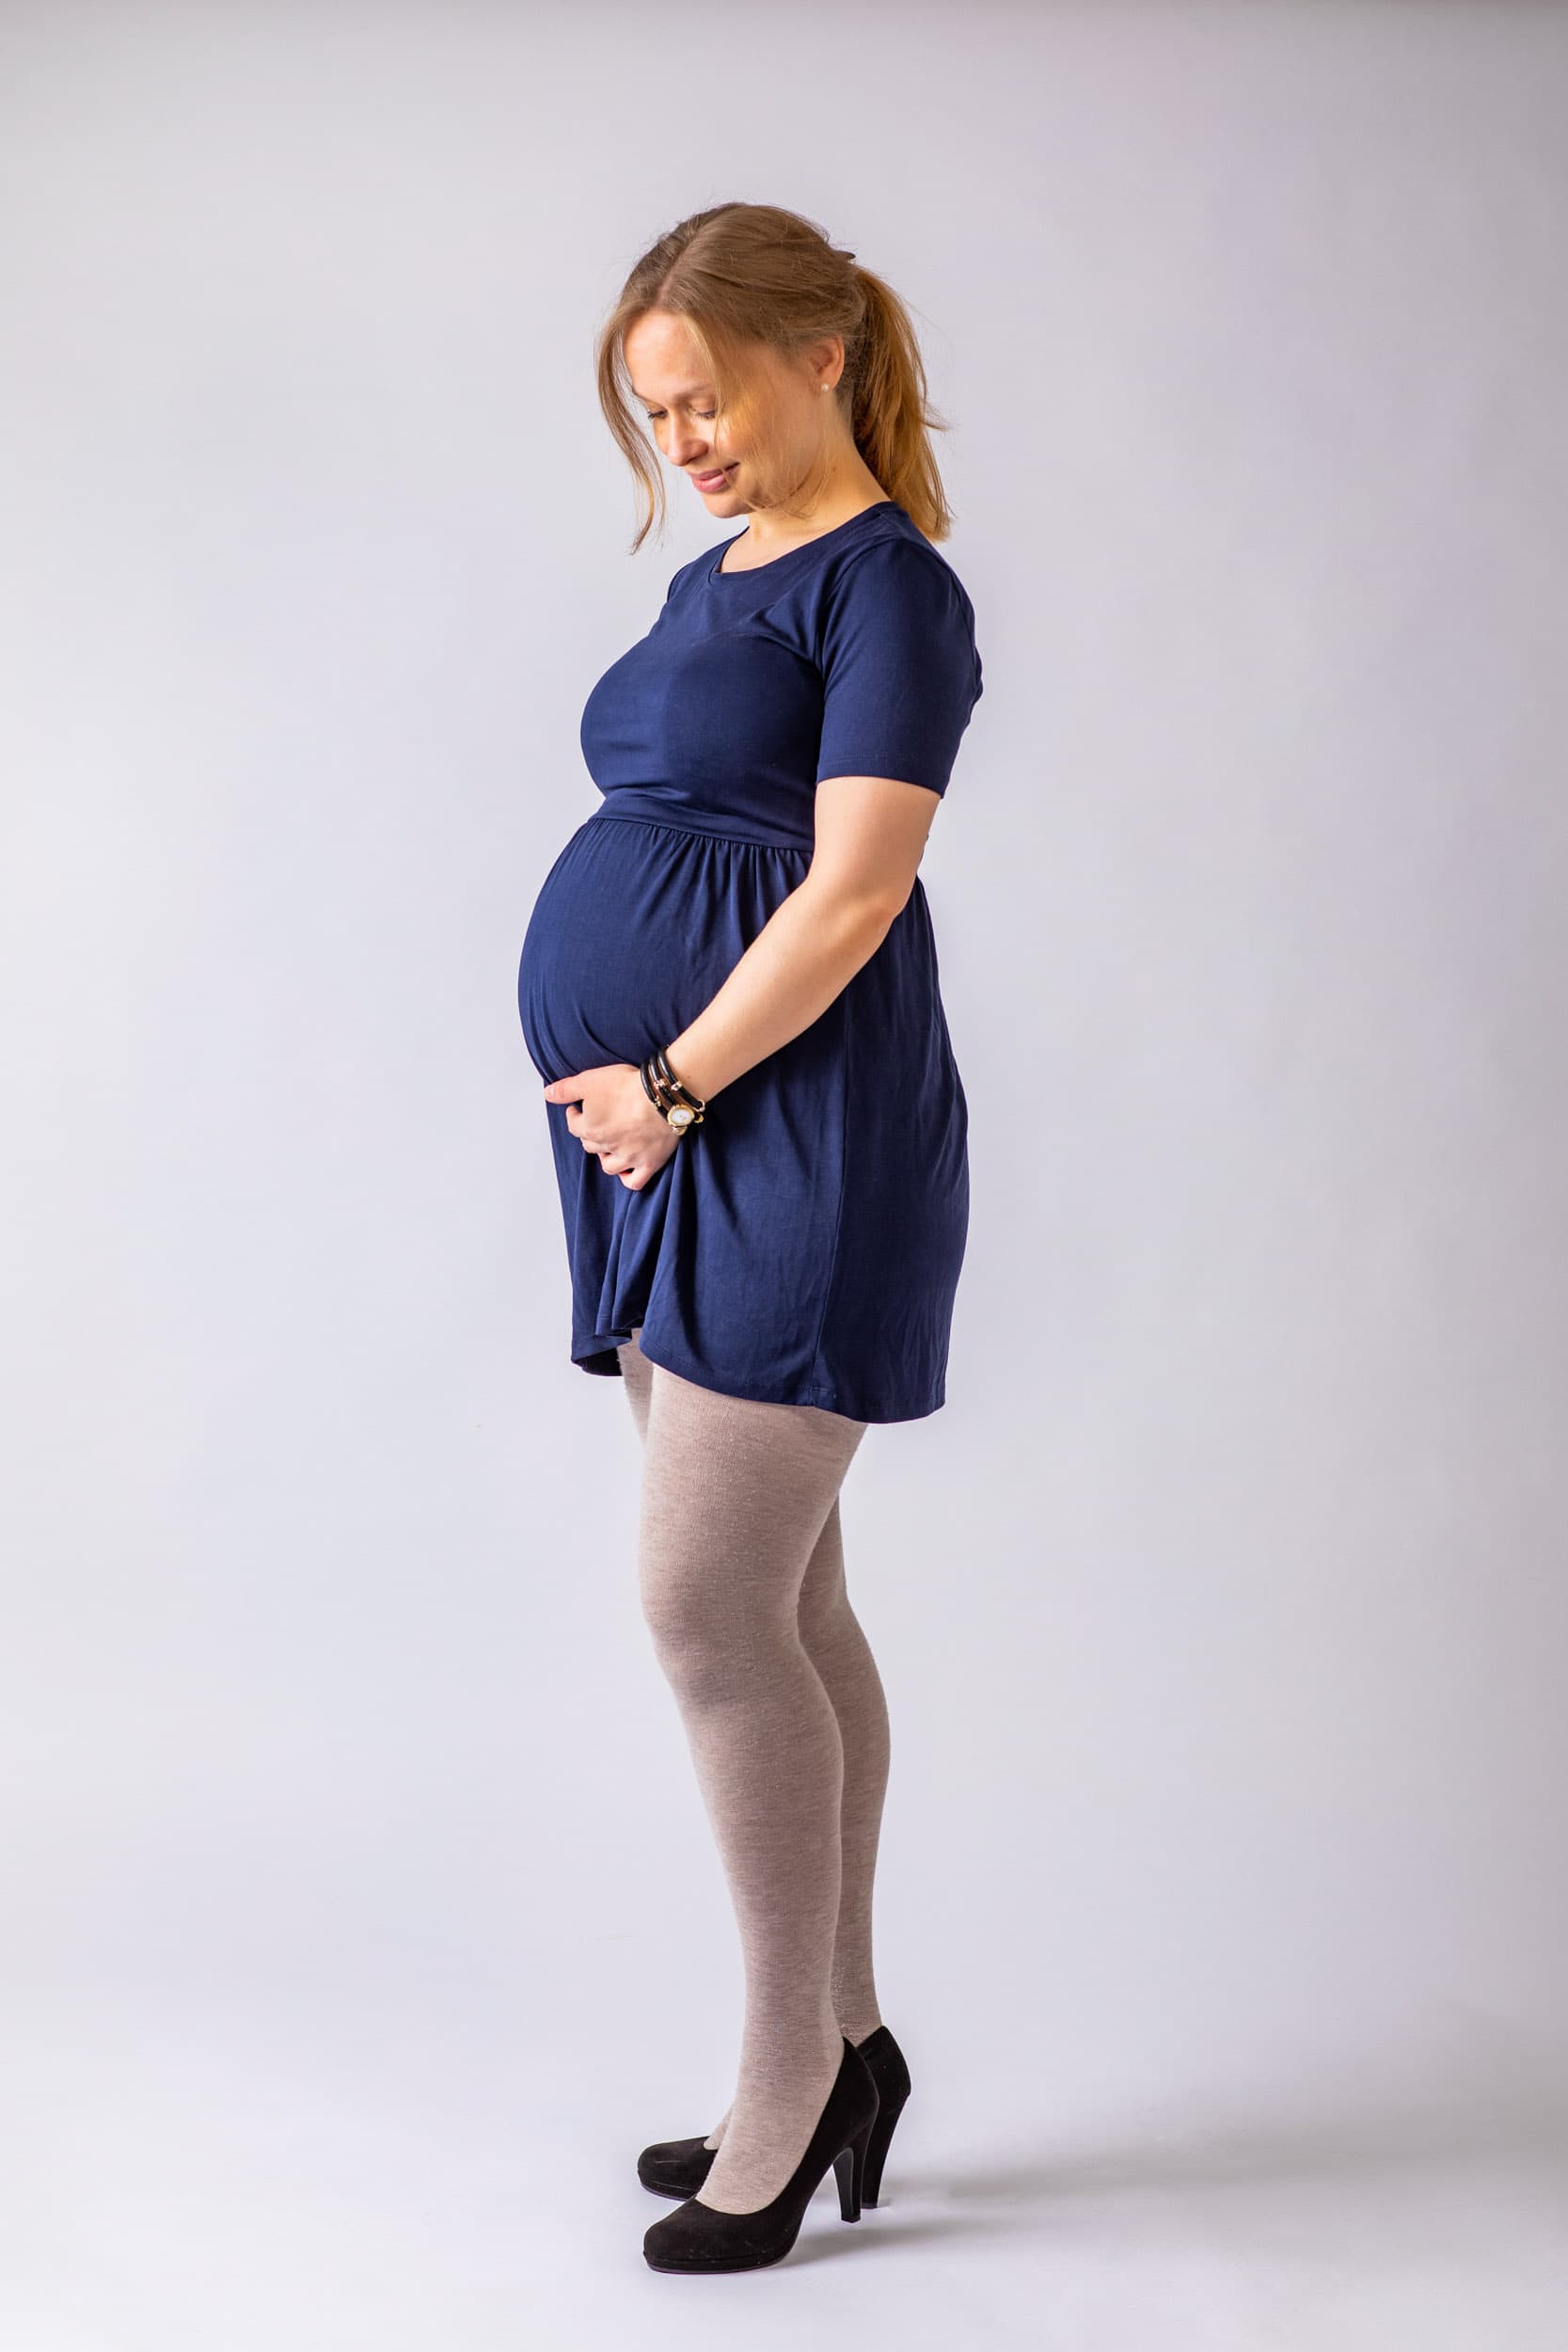 Graviditetsbilleder hos fotograf